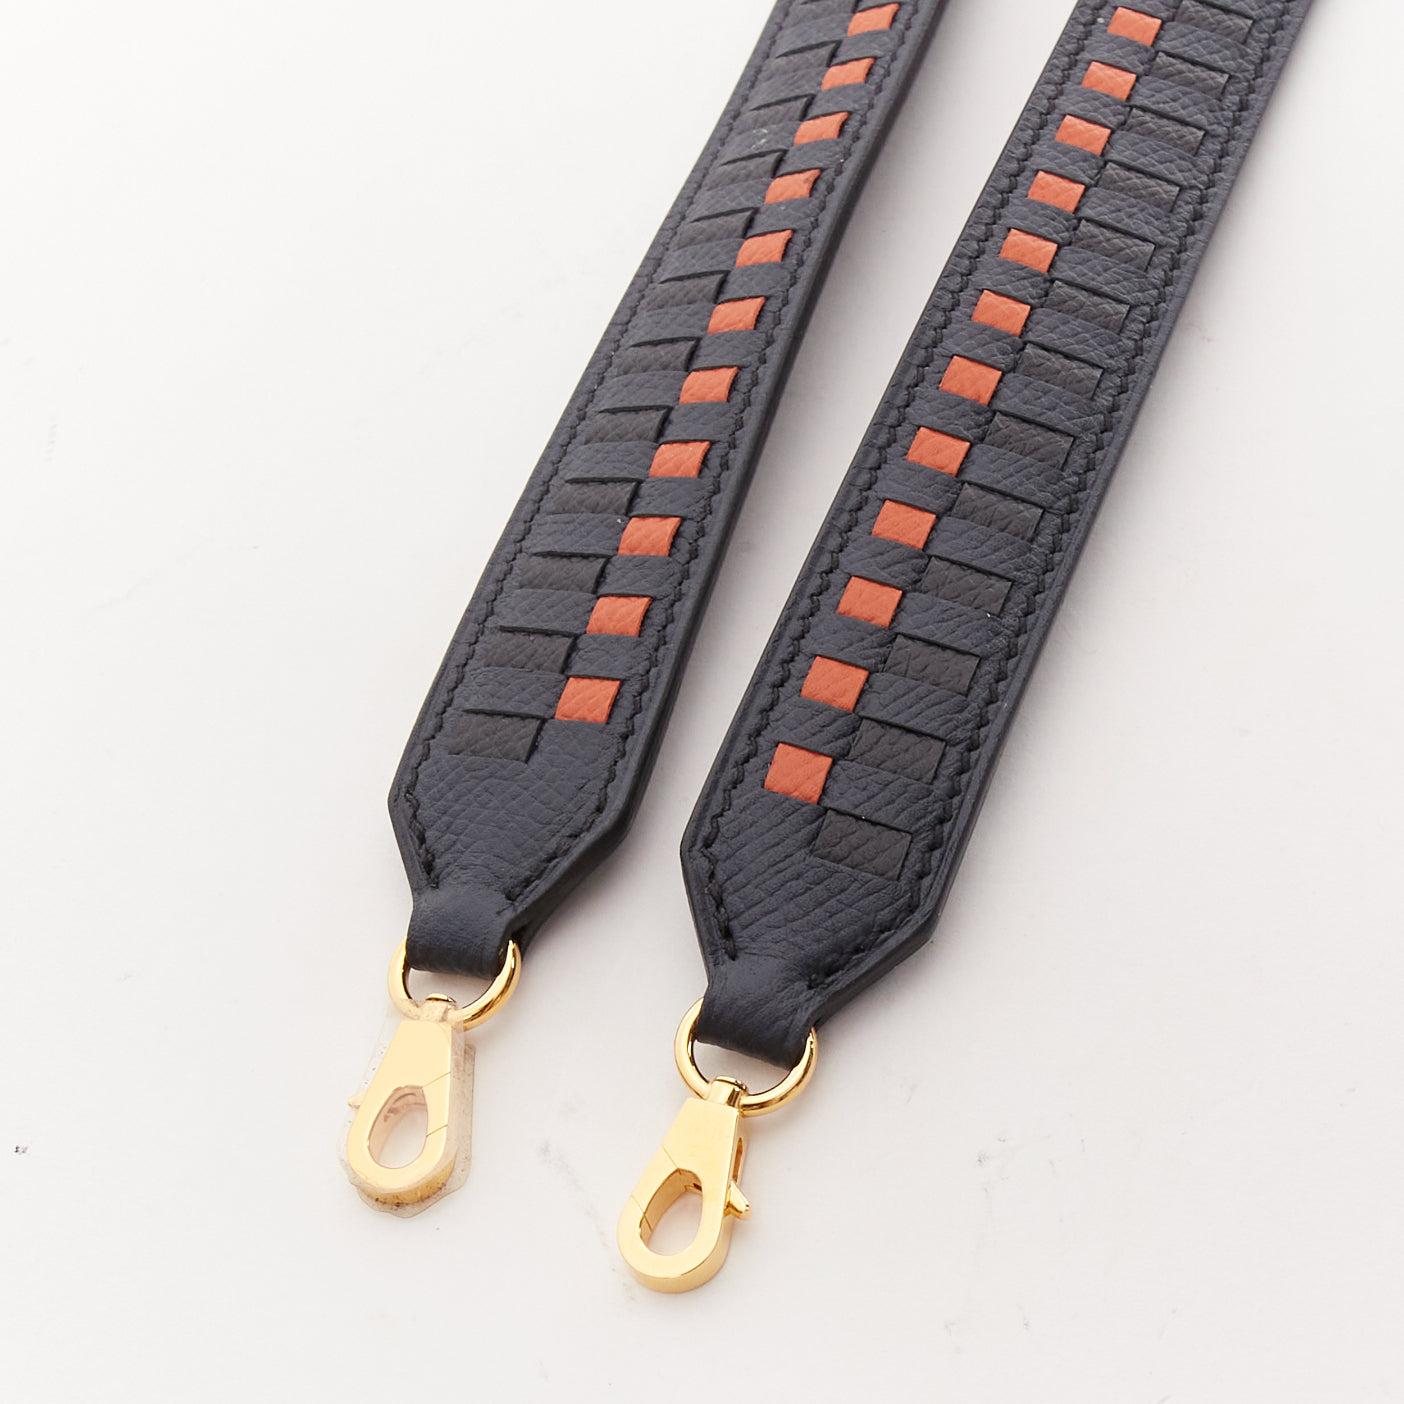 HERMES Sangle 25 orange black woven leather gold hardware bag strap 2